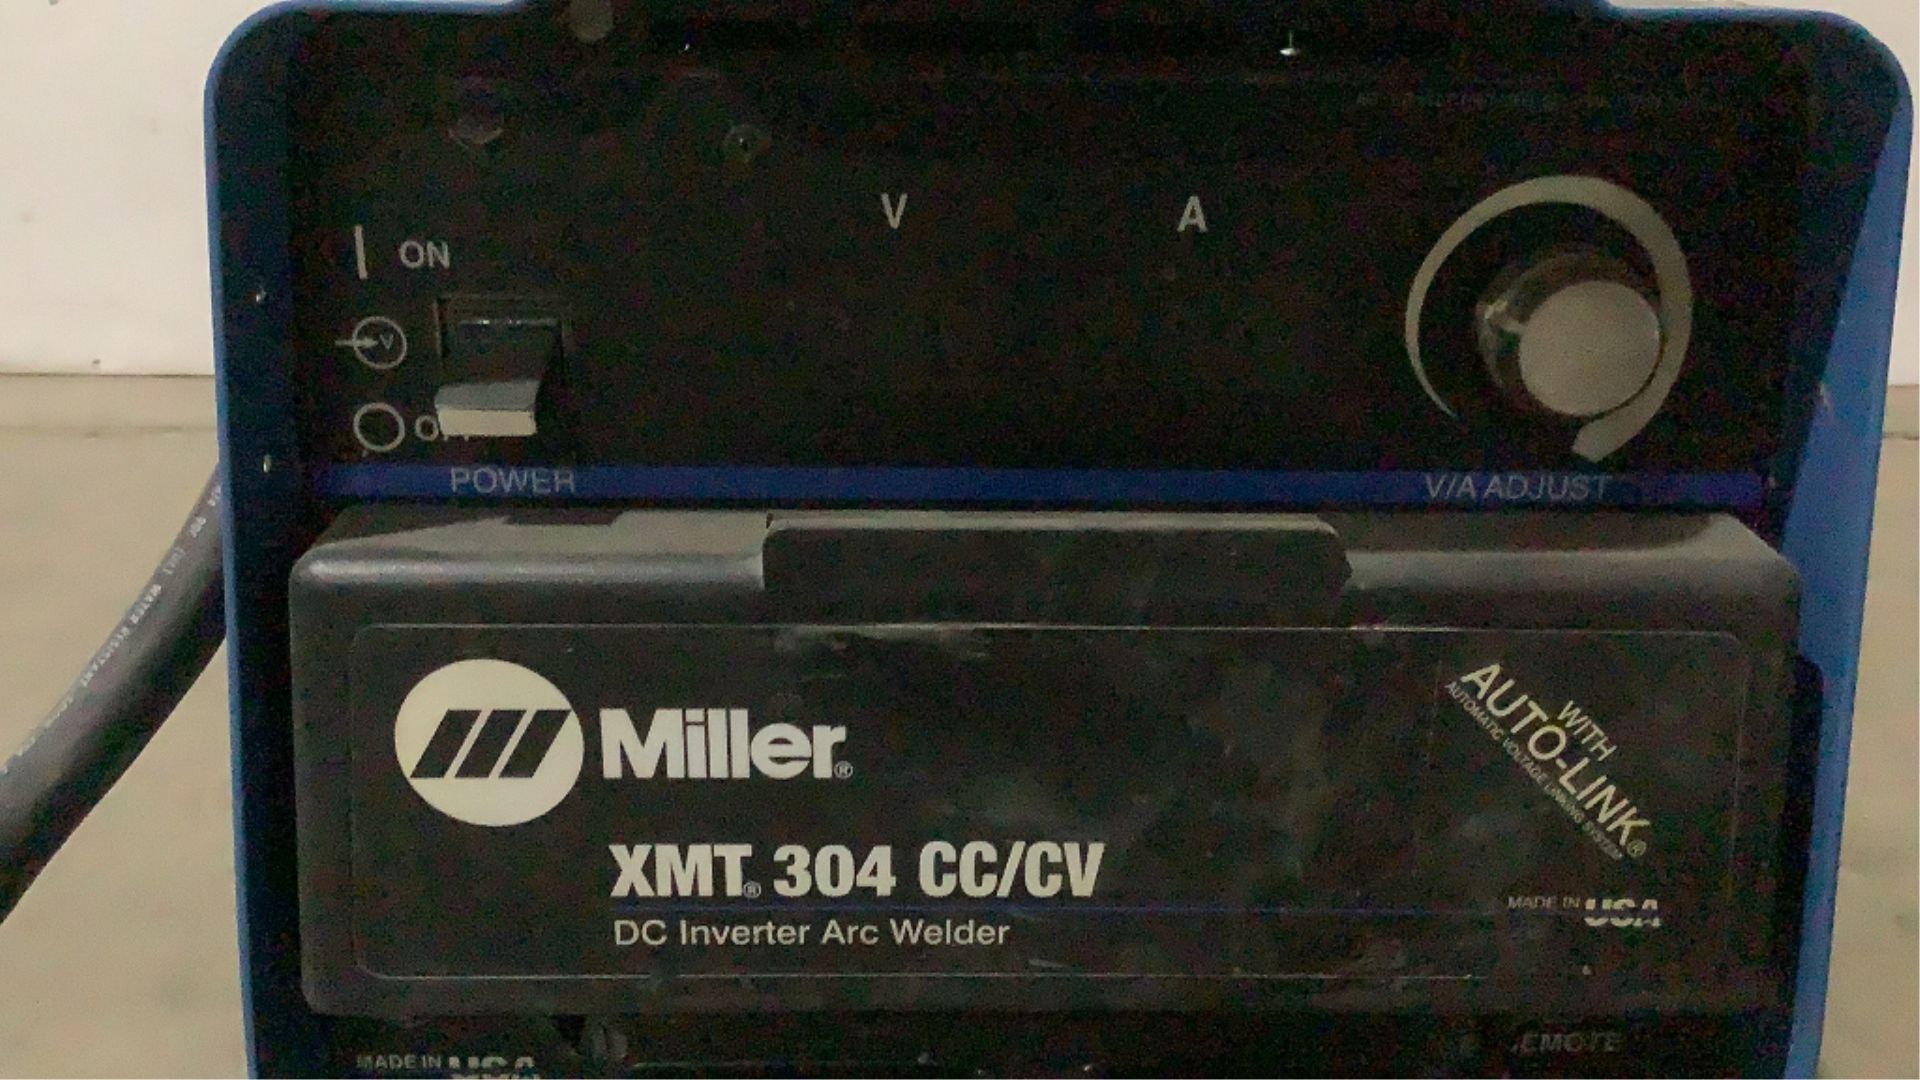 Miller DC Inverter Arc Welder XMT 304 cc/cv - Image 3 of 18